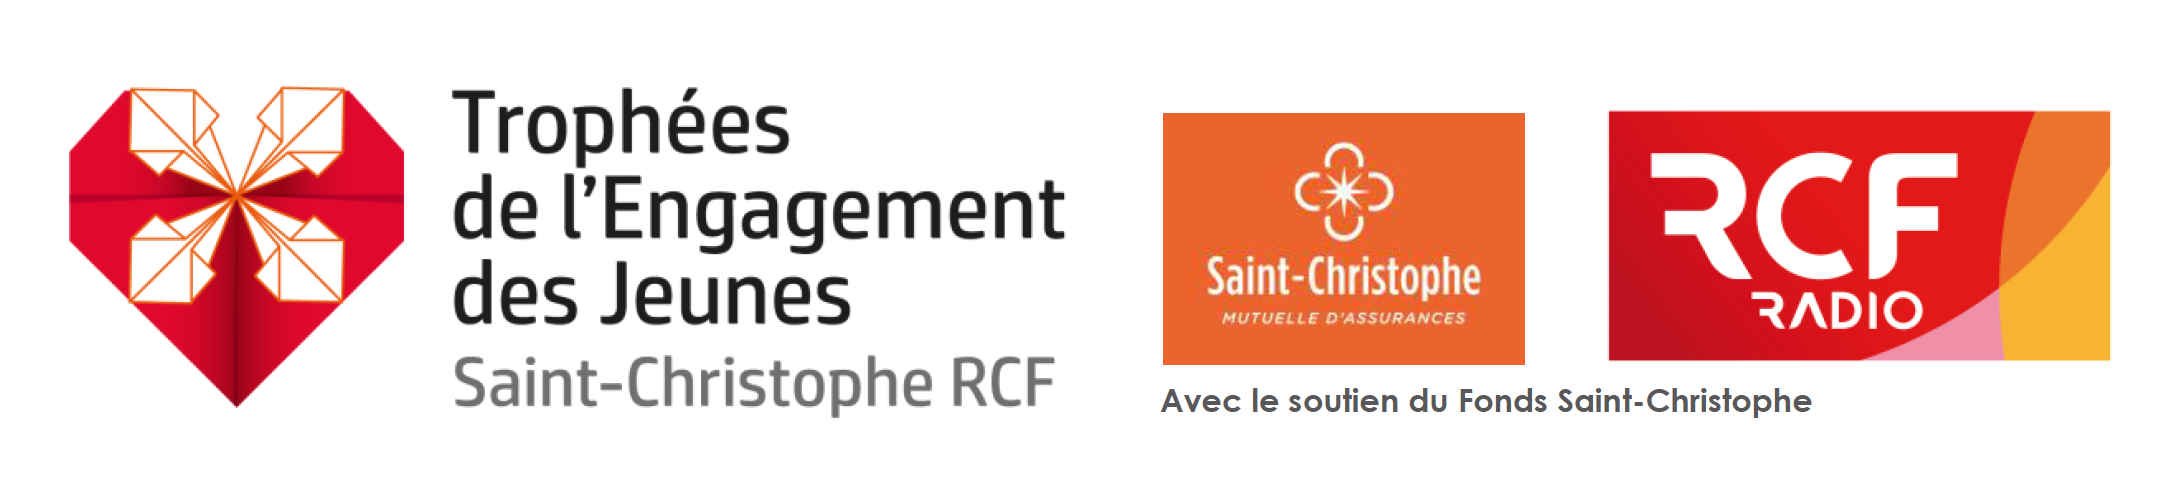 RCF lance "Les Trophées de l'Engagement des Jeunes Saint-Christophe RCF"